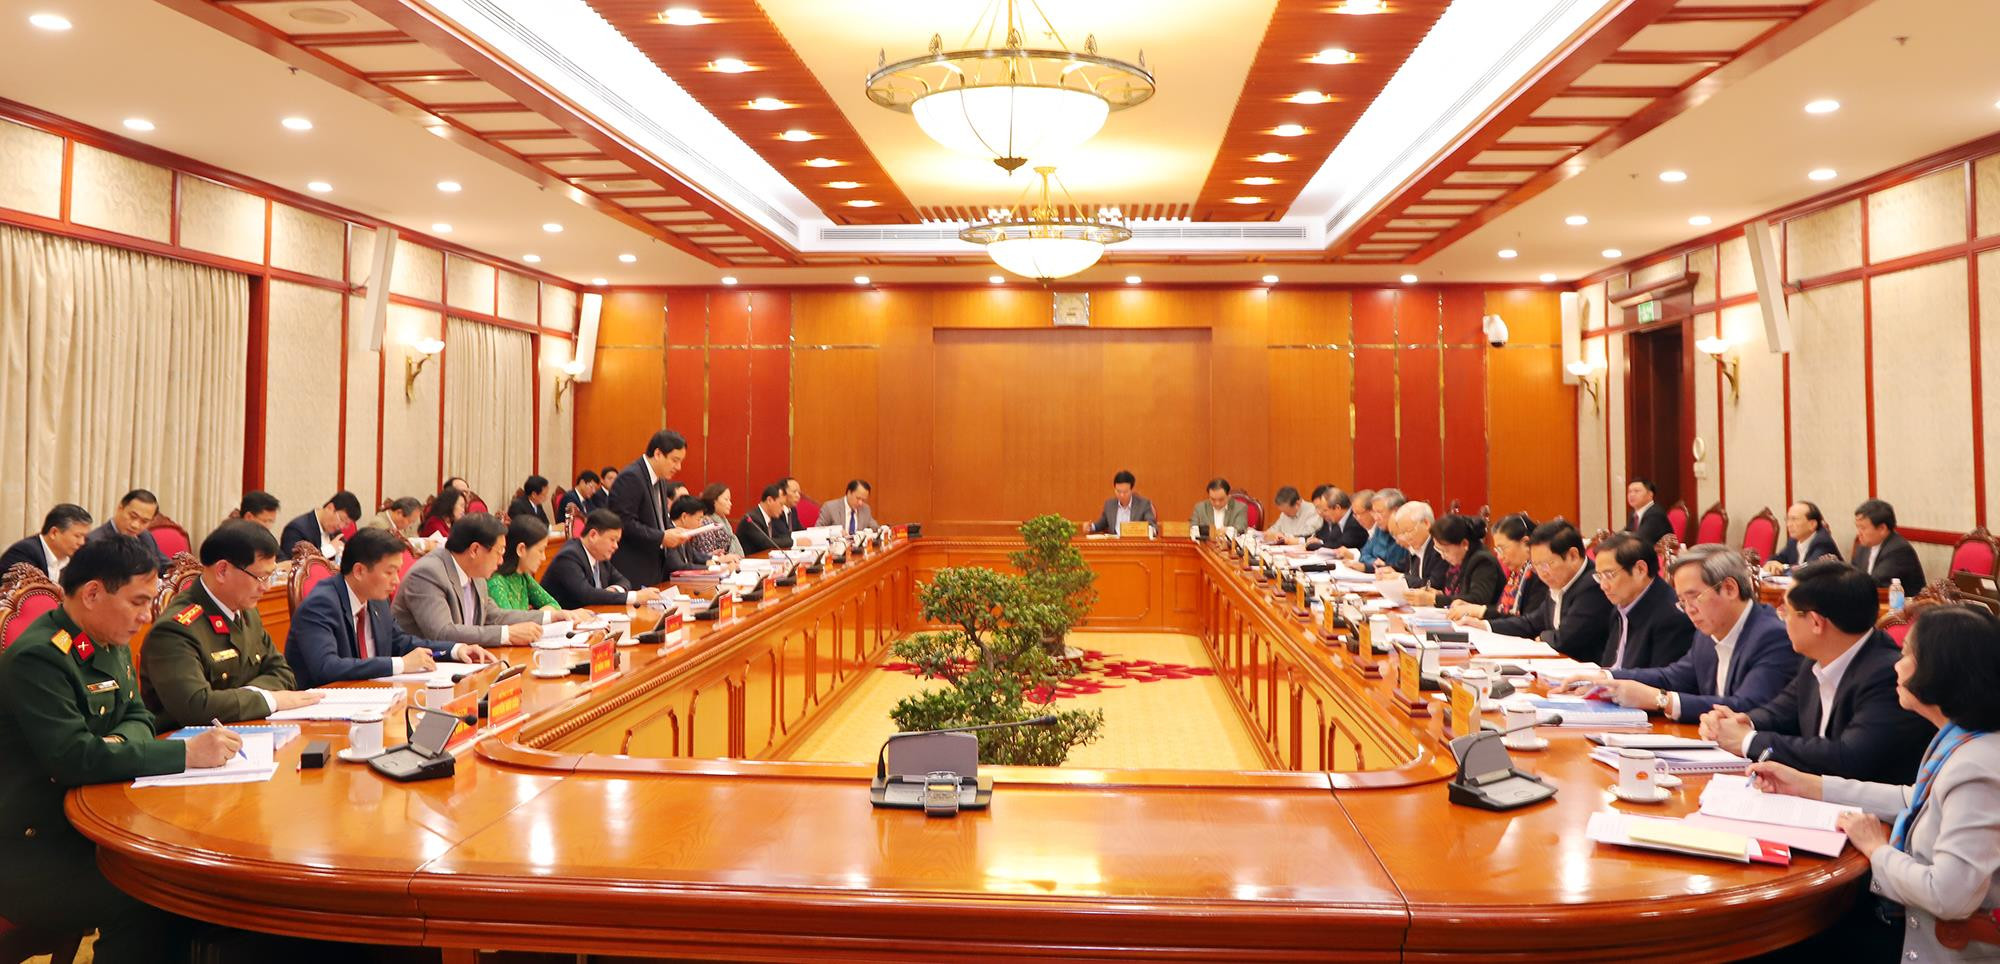 Toàn cảnh phiên làm việc của Bộ Chính trị với Ban Thường vụ Tỉnh ủy Nghệ An, ngày 21/3/2019. Ảnh tư liệu